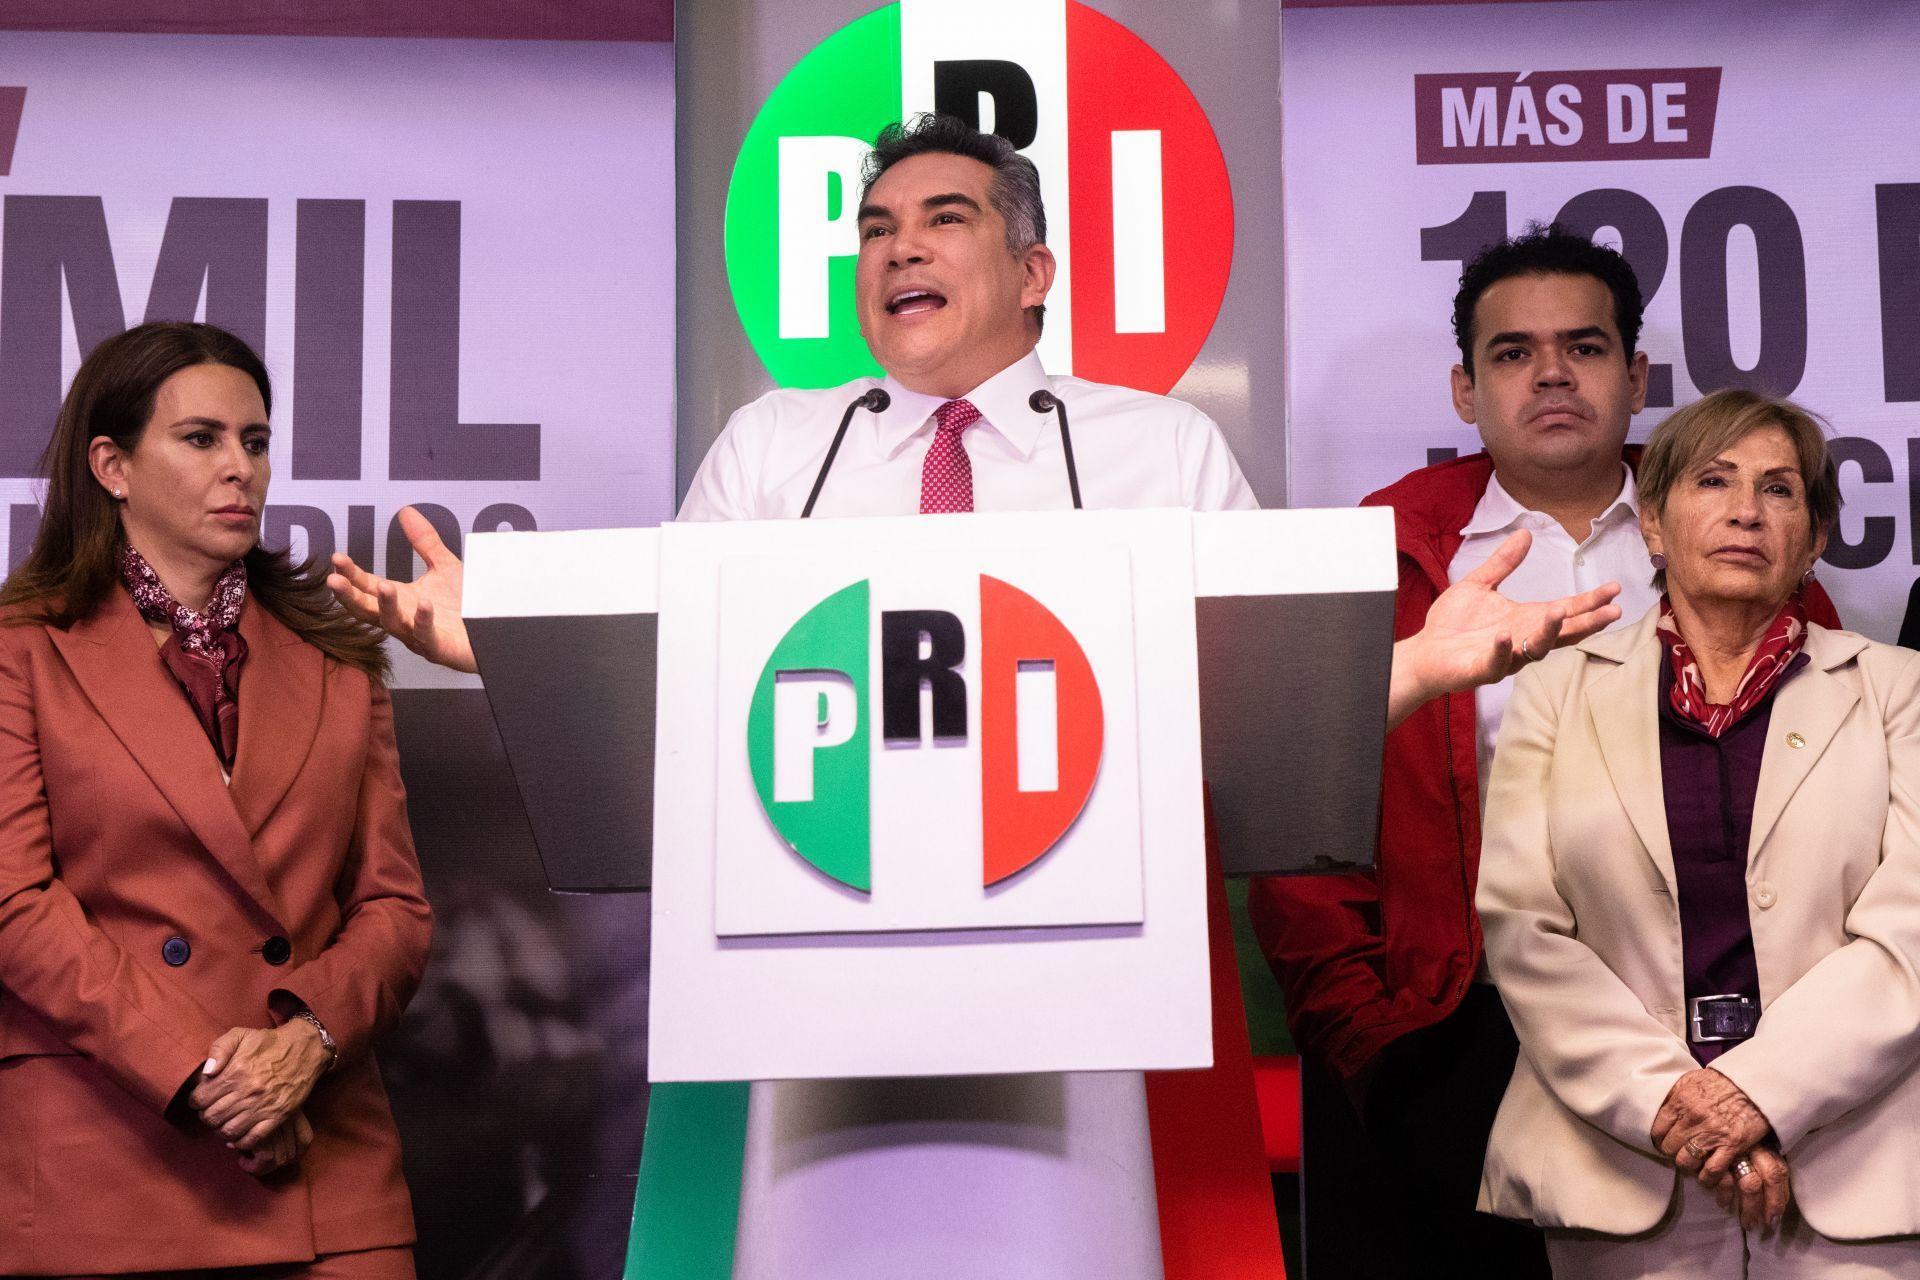 Nuevo audio de Alejandro Moreno revela cómo pagó dinero por fuera a Televisa para campañas y candidatos